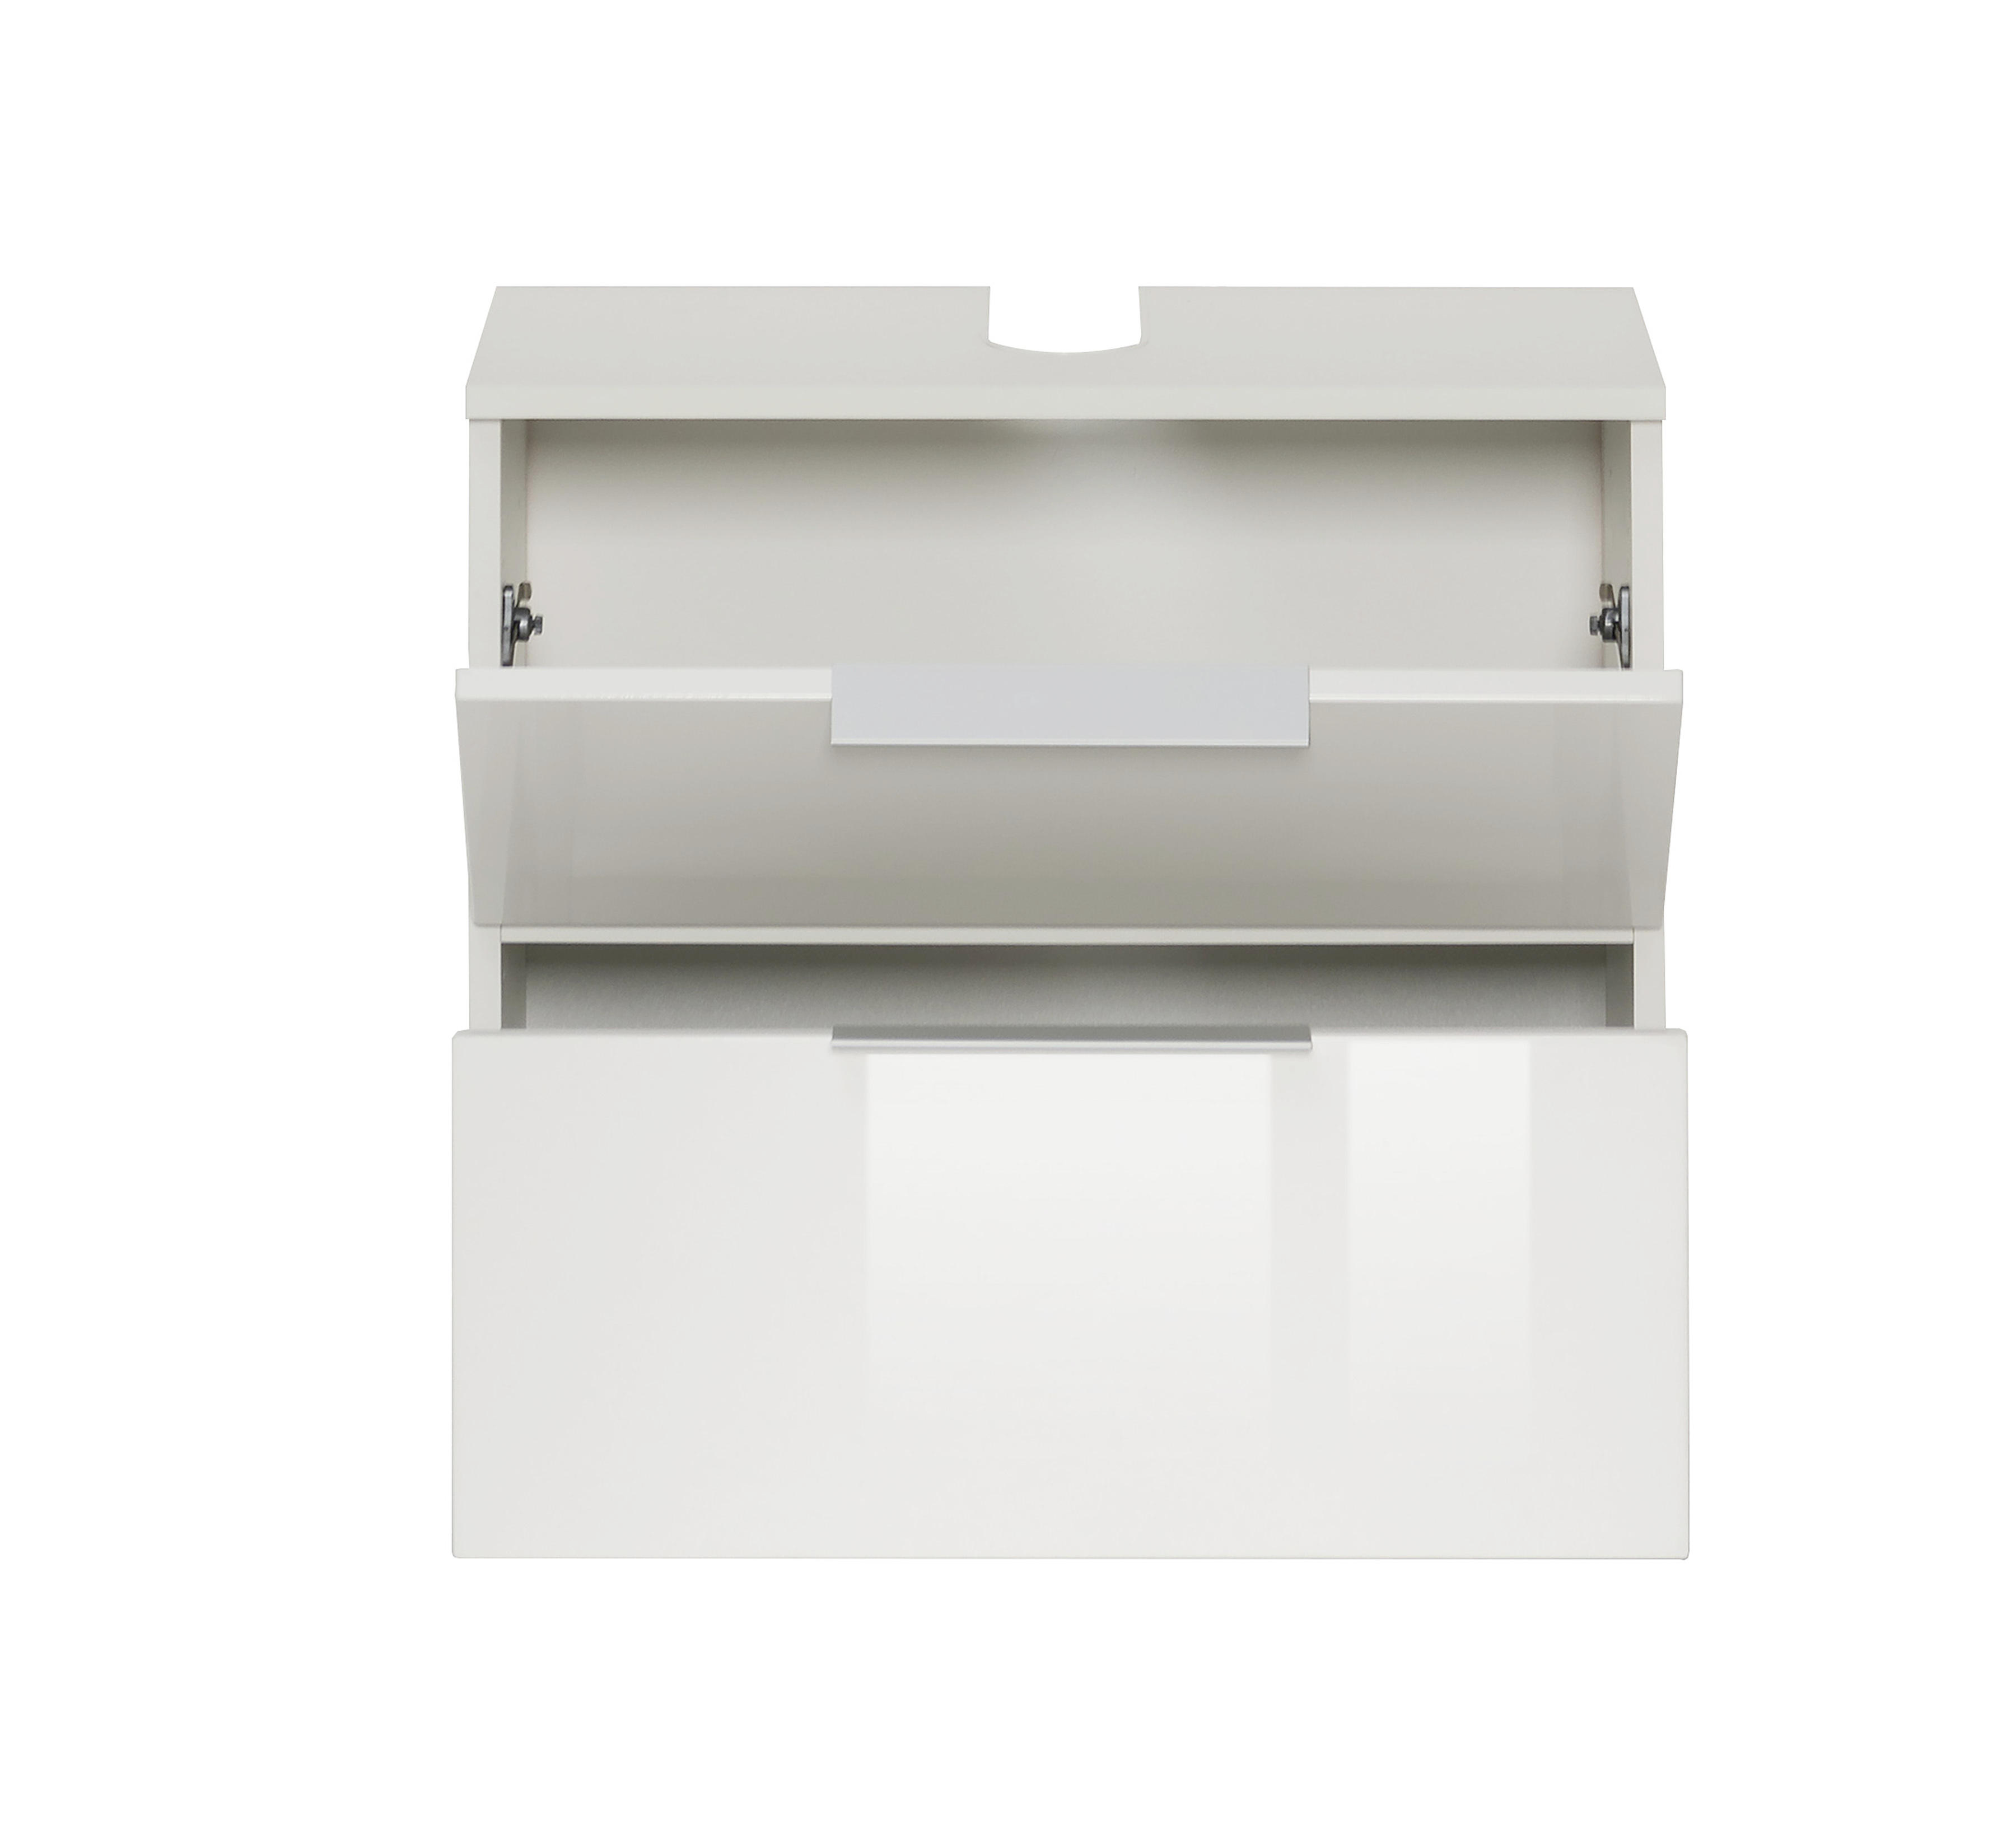 WASCHBECKENUNTERSCHRANK Weiß  - Silberfarben/Alufarben, Design, Holzwerkstoff/Kunststoff (60/54/35cm) - Xora